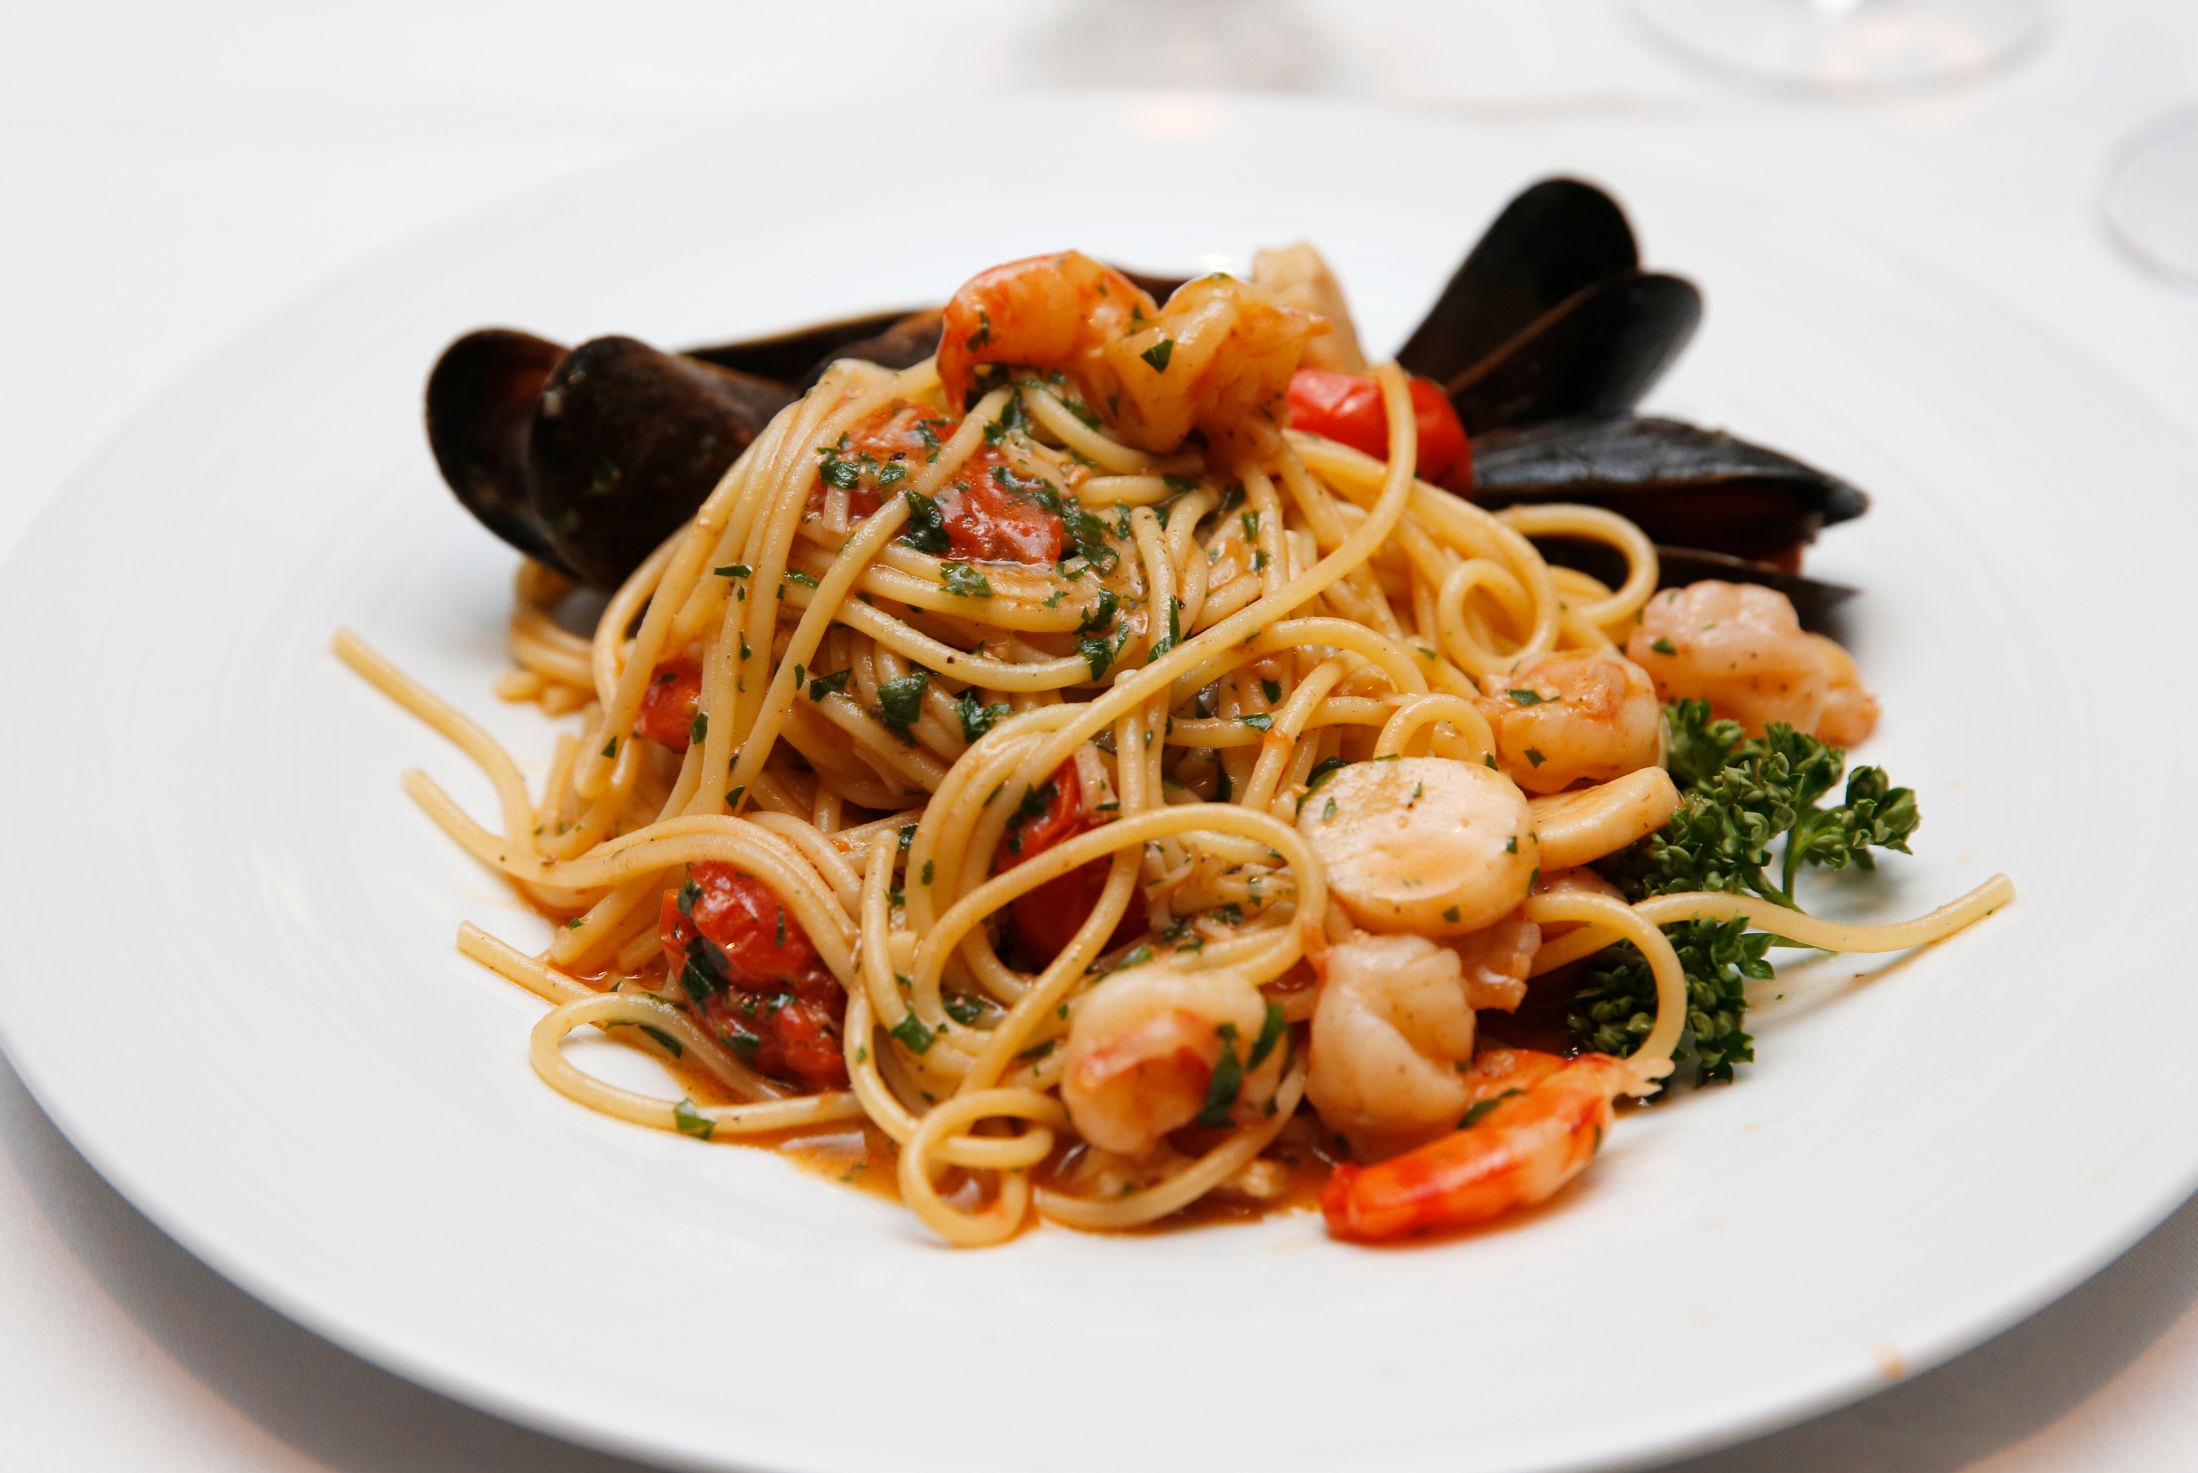 SPAGHETTI MED SJØMAT: Ruffino serverer ekte italiensk spaghetti med sjømat. Kamskjell, reker og blåskjell. FOTO: TROND SOLBERG/VG